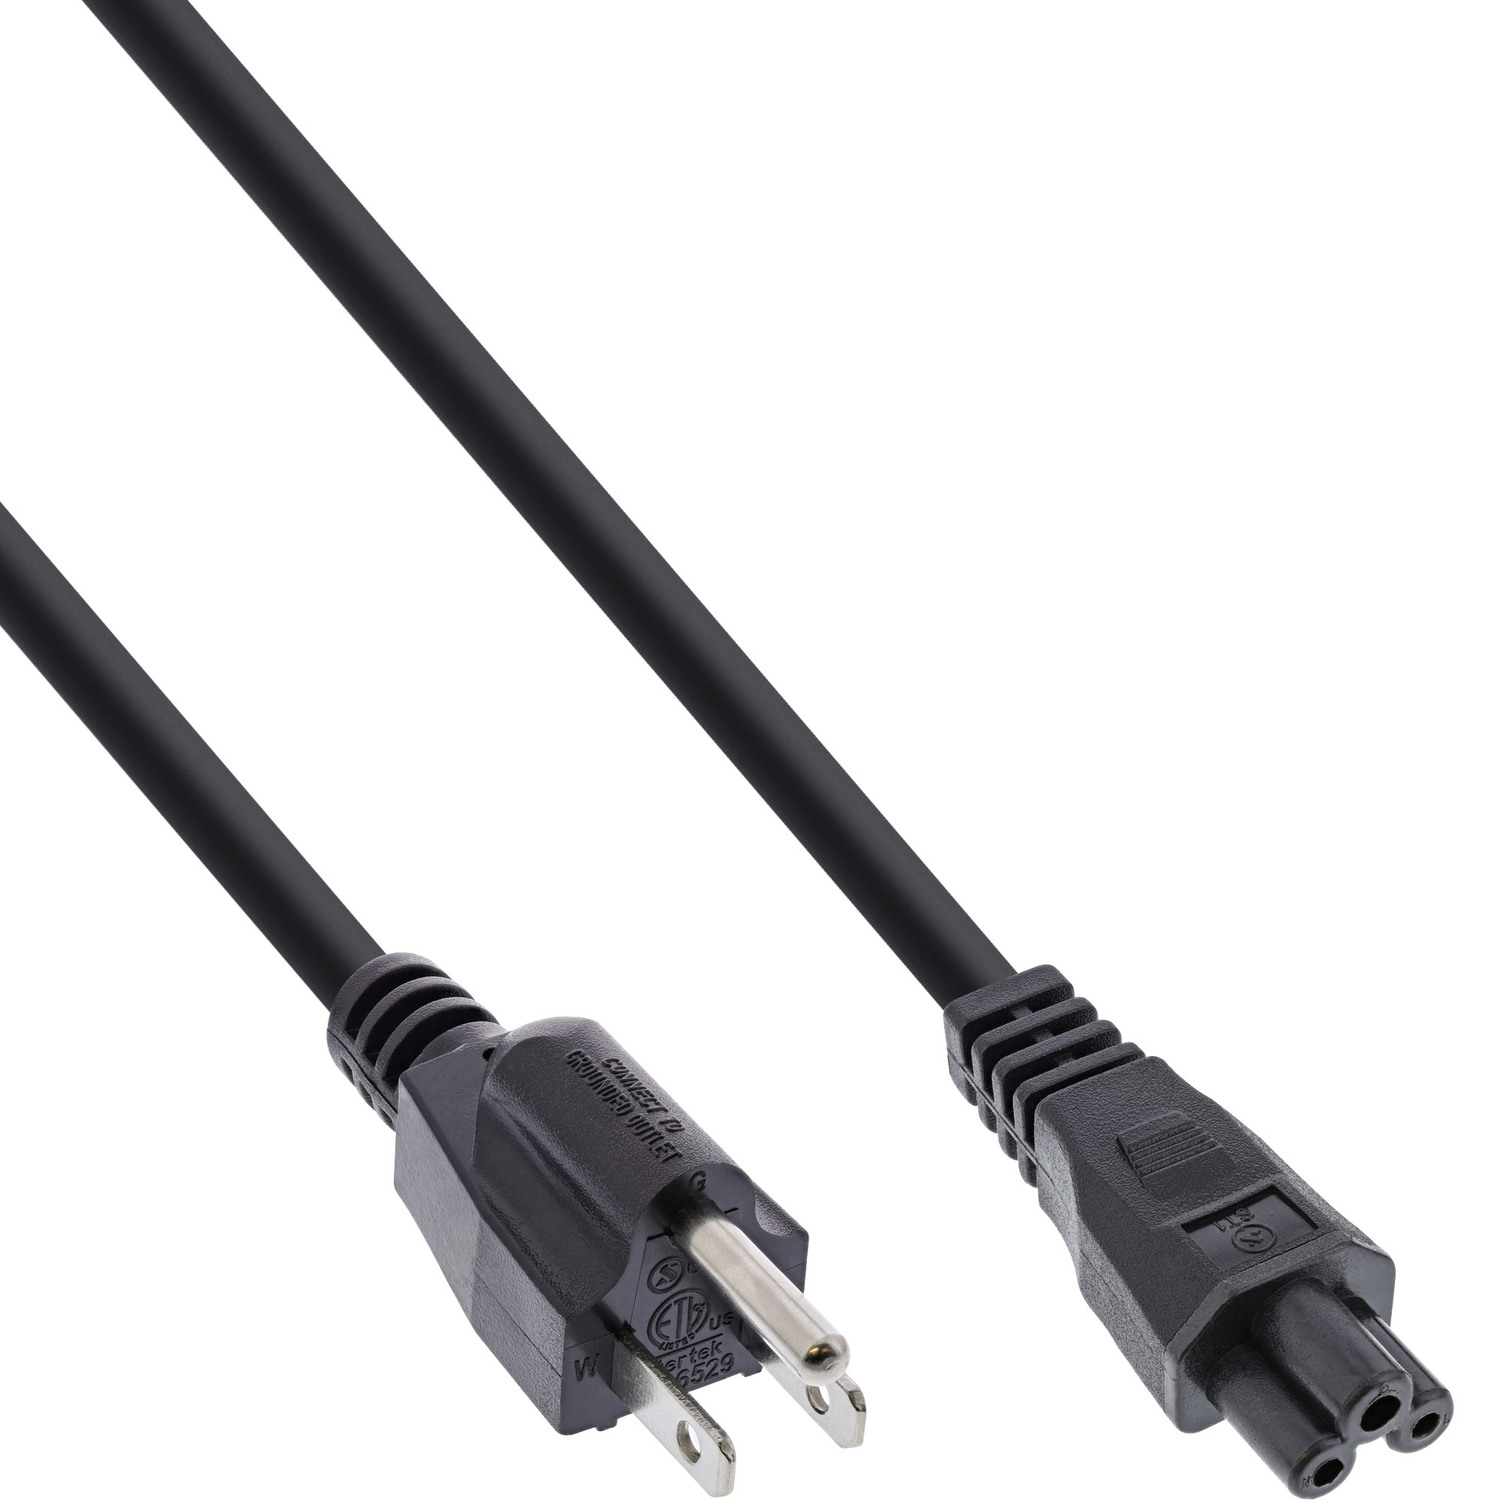 Kabel, extern, m, 2 2m für USA/Canada, schwarz INLINE Notebook, Stromkabel Kupplung, Netzkabel 3pol InLine®